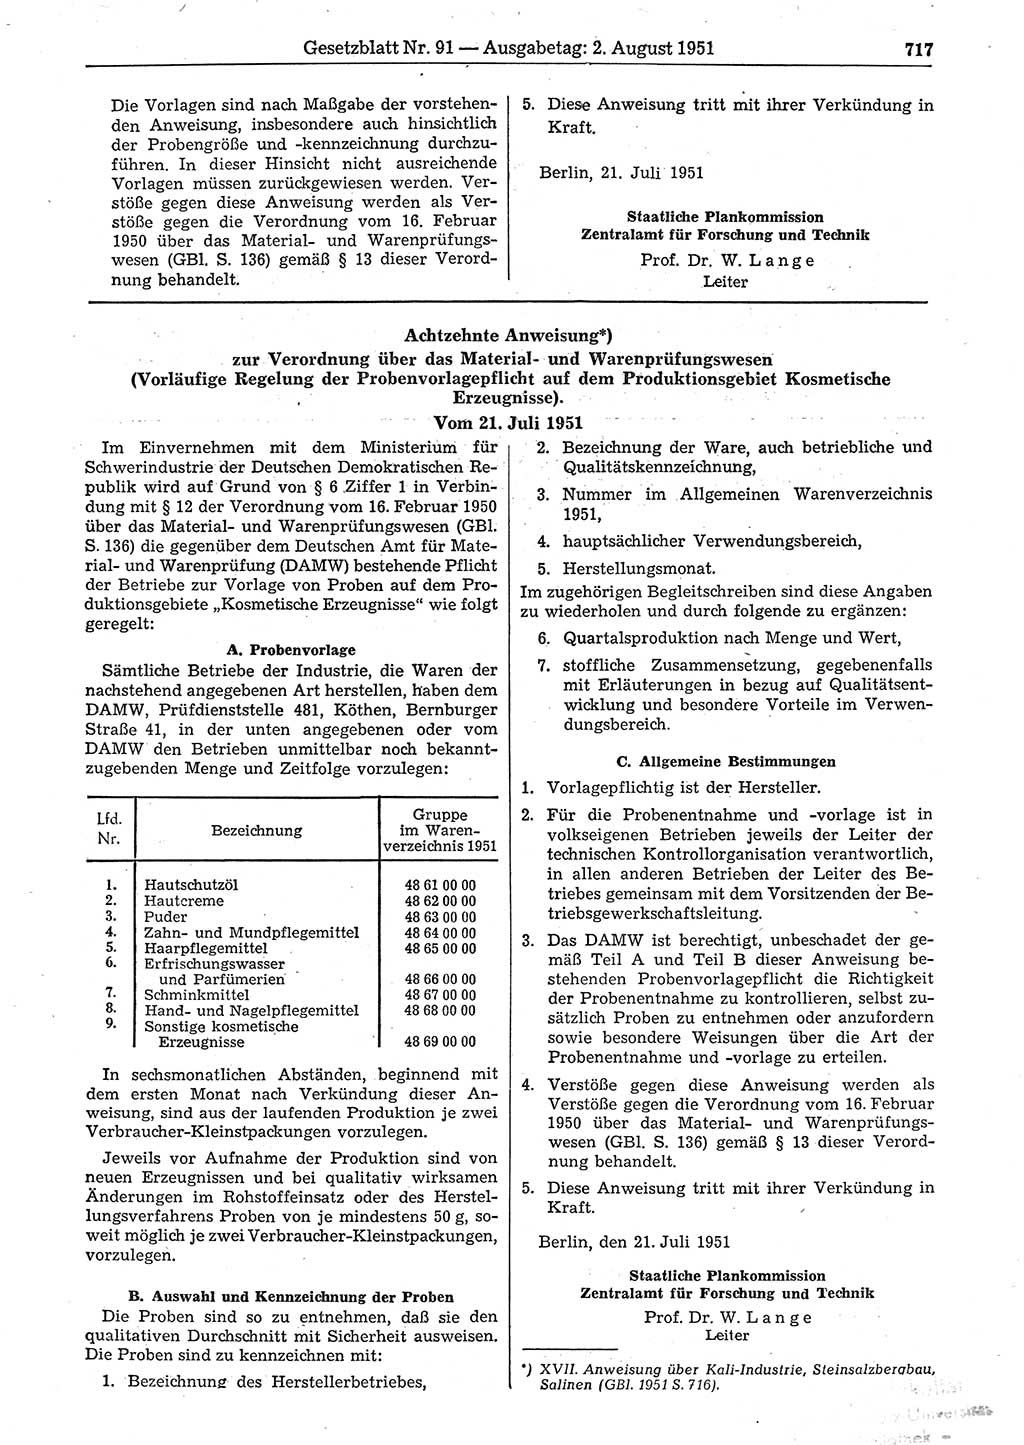 Gesetzblatt (GBl.) der Deutschen Demokratischen Republik (DDR) 1951, Seite 717 (GBl. DDR 1951, S. 717)